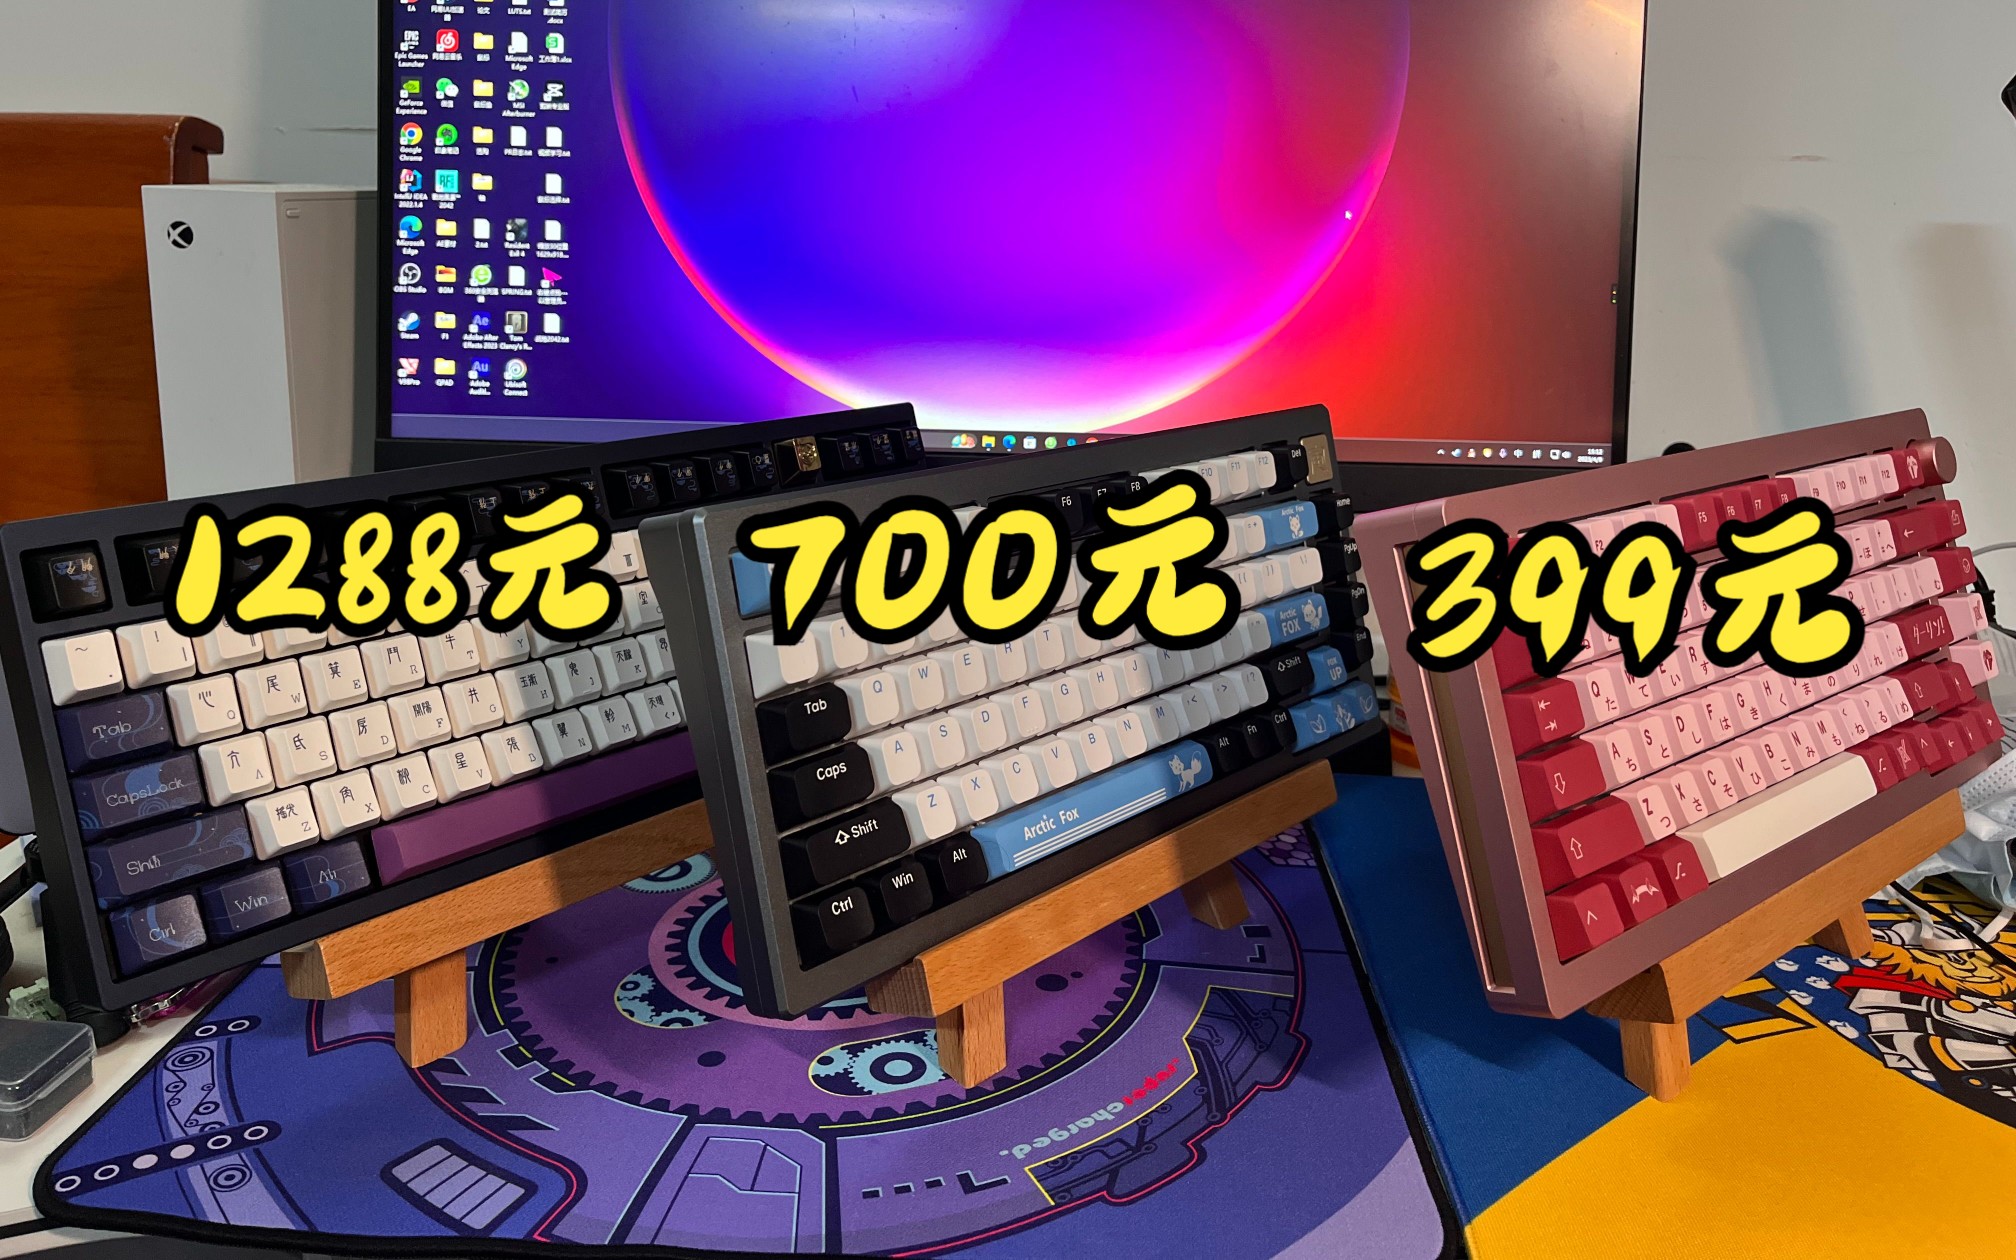 客制化铝坨坨机械键盘差价高，区别大吗？399元、700元、1288元简单对比下